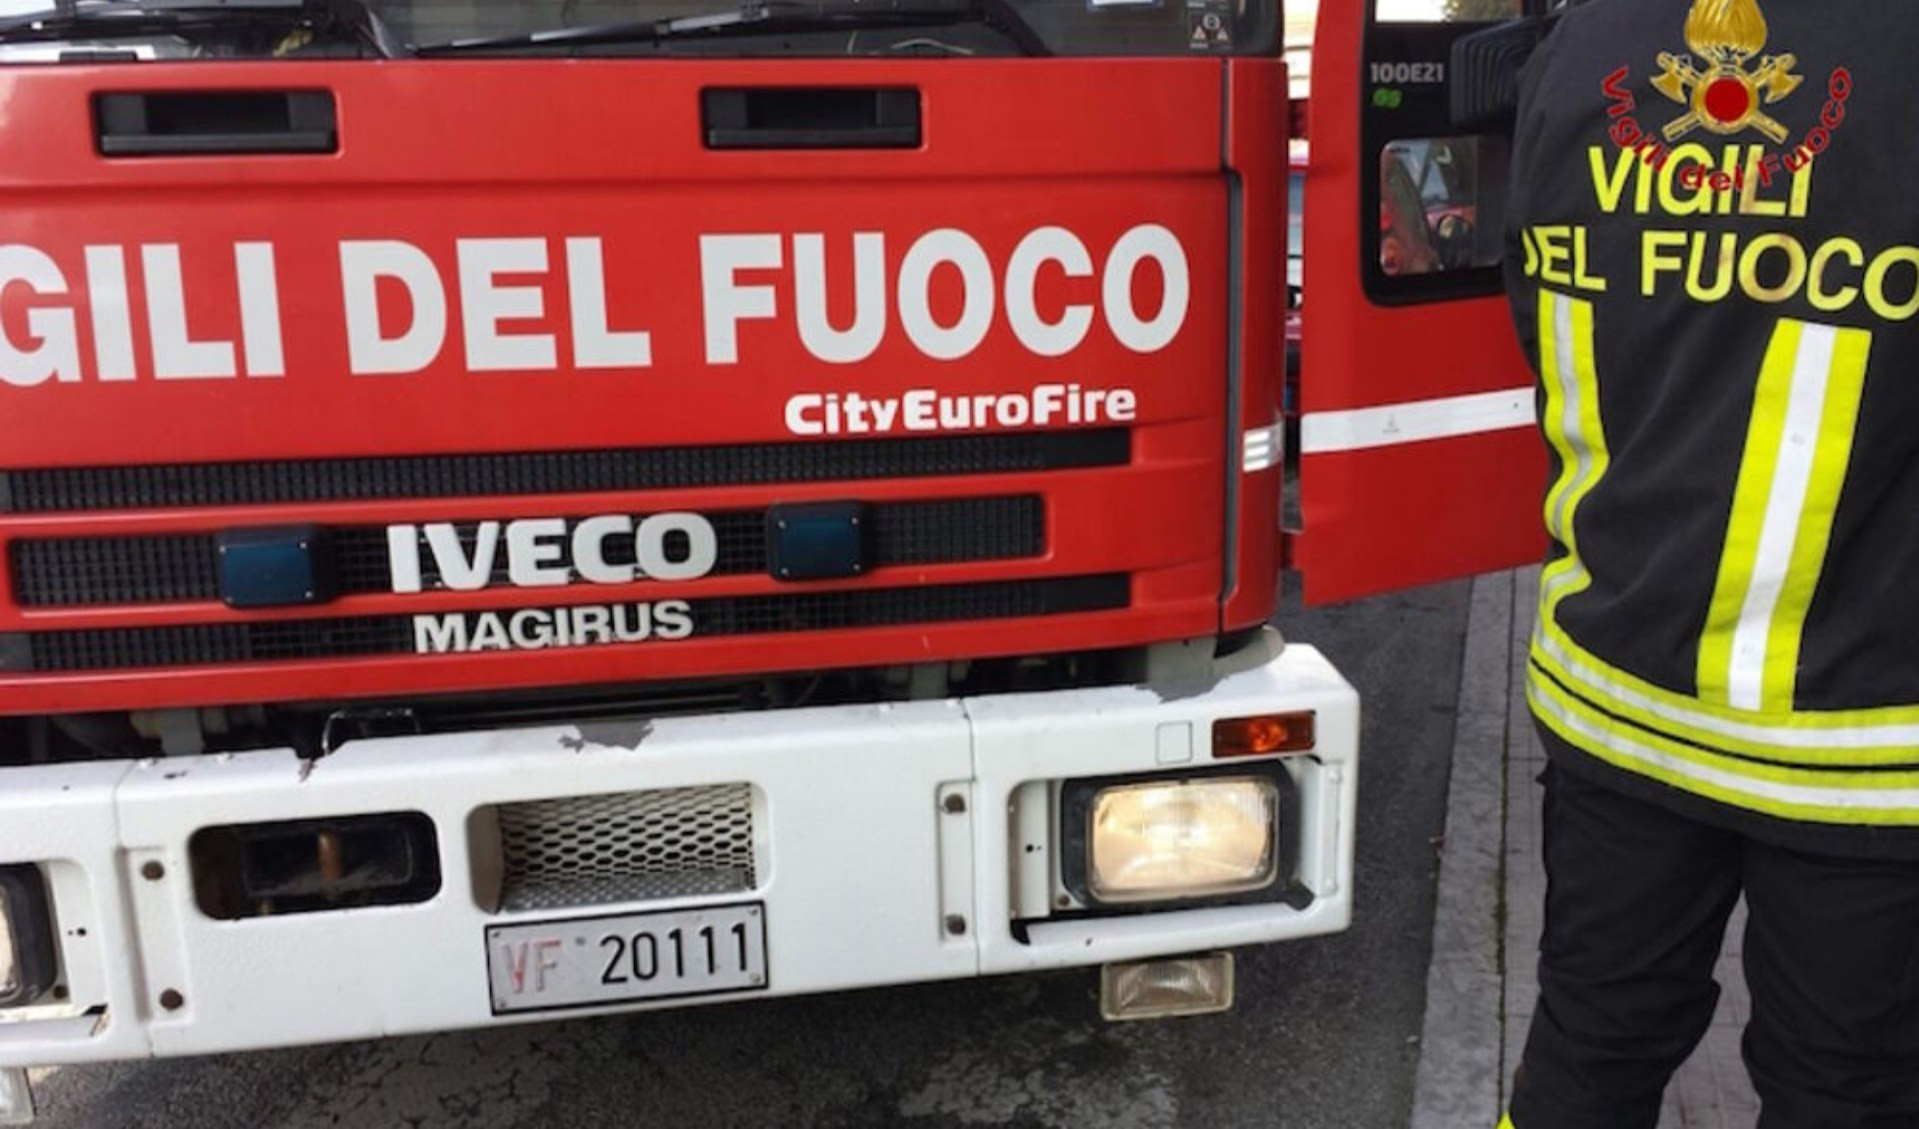 Tragedia a Savona, anziano trovato morto: ipotesi fuga di gas